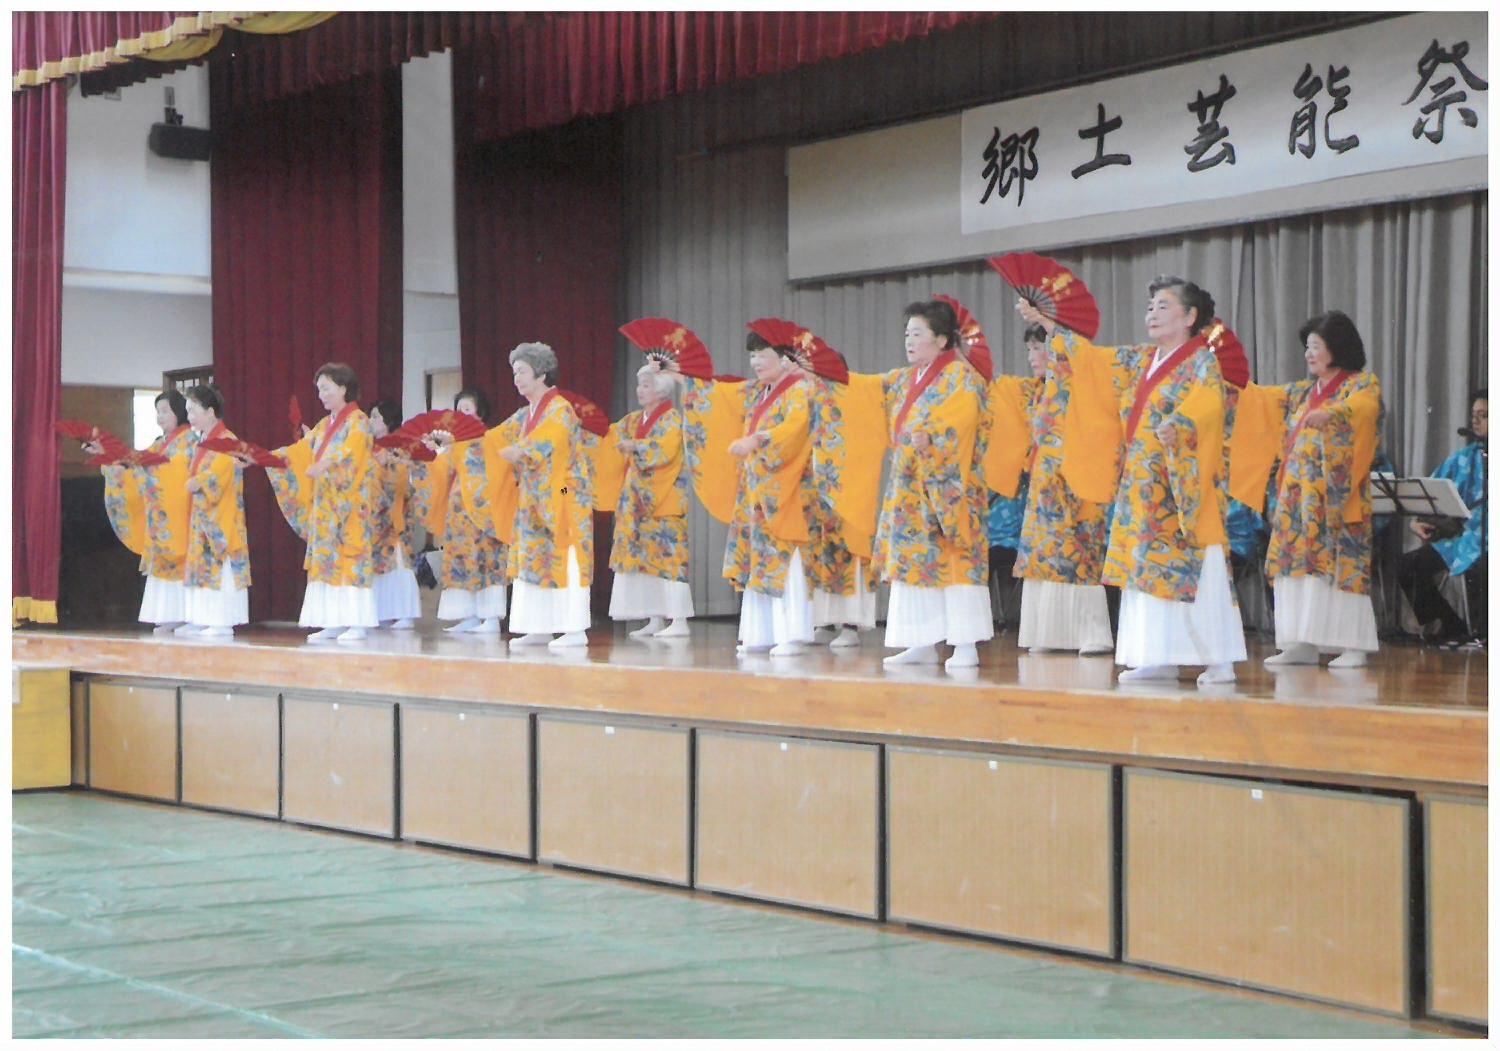 沖縄の伝統衣装を着て扇子を持ち踊りを披露している女性のグループの写真